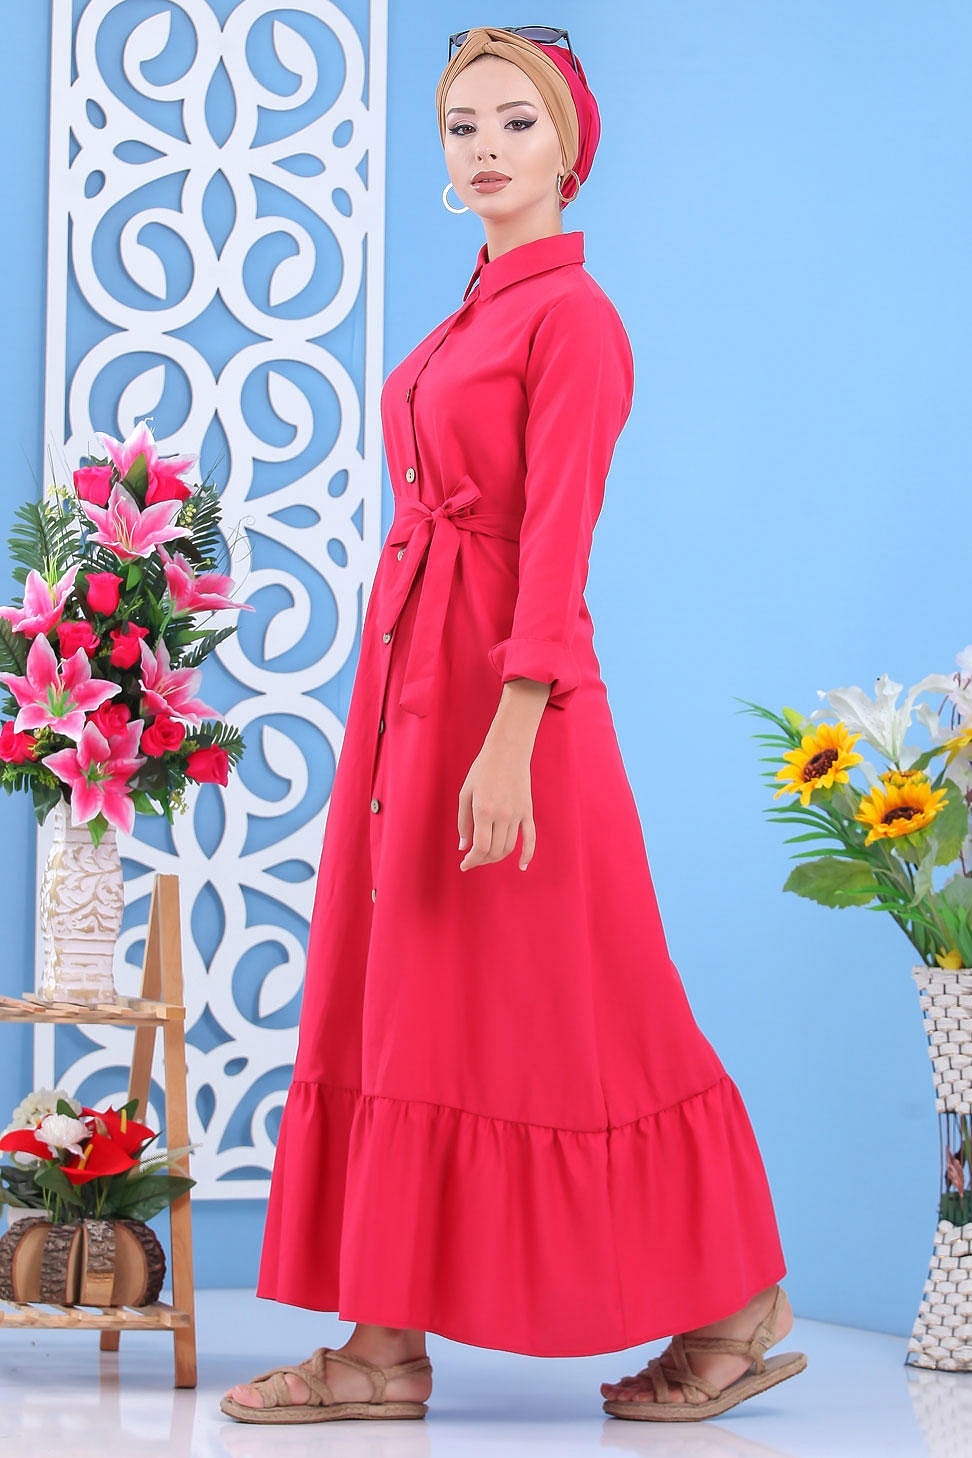 Robe longue de ville boutonnée avec ceinture pour femme - Couleur kaki  (Vêtement femme fabriqué en Turquie) - Prêt à porter et accessoires